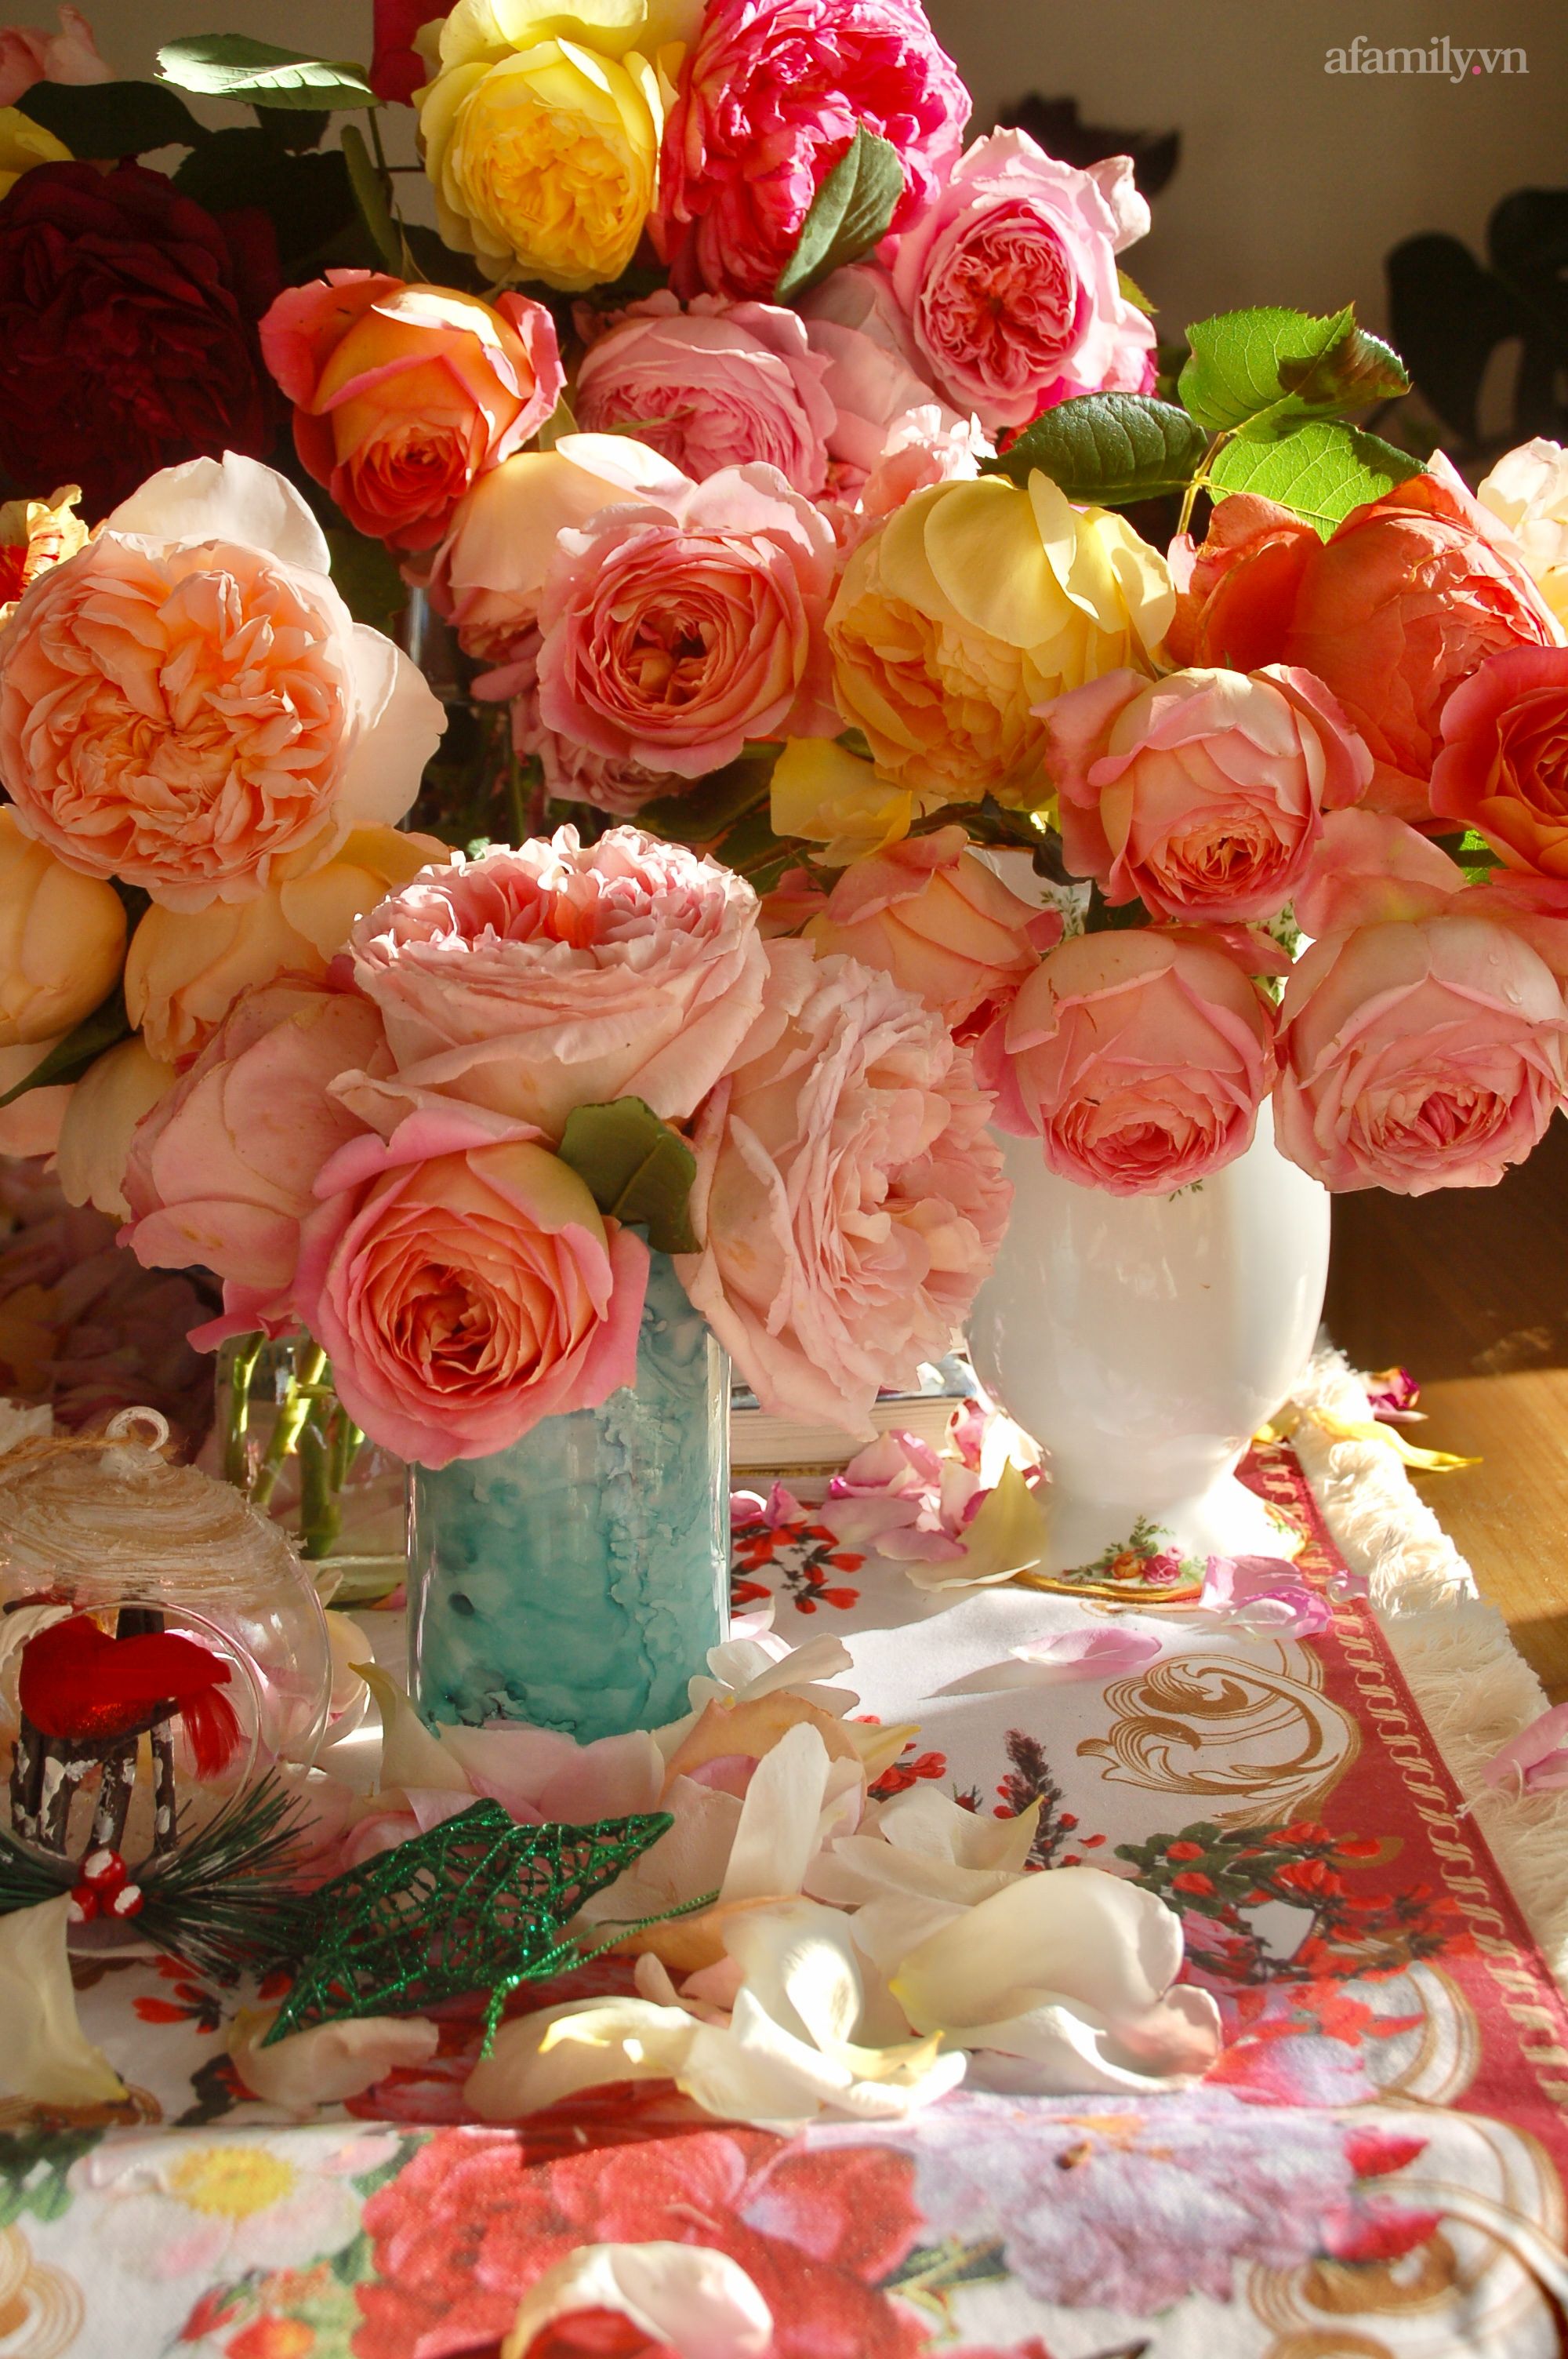 Hãy cùng ngắm những hình ảnh hoa hồng chill tuyệt đẹp và thư thái, khiến trái tim bạn được thăng hoa thêm một tầng. Những bông hồng tươi tắn này sẽ đưa bạn đến không gian yên bình và đầy sự rực rỡ. Điều tuyệt vời hơn, bạn có thể cho rằng mình đang đi dạo trong một vườn hoa thật sự.